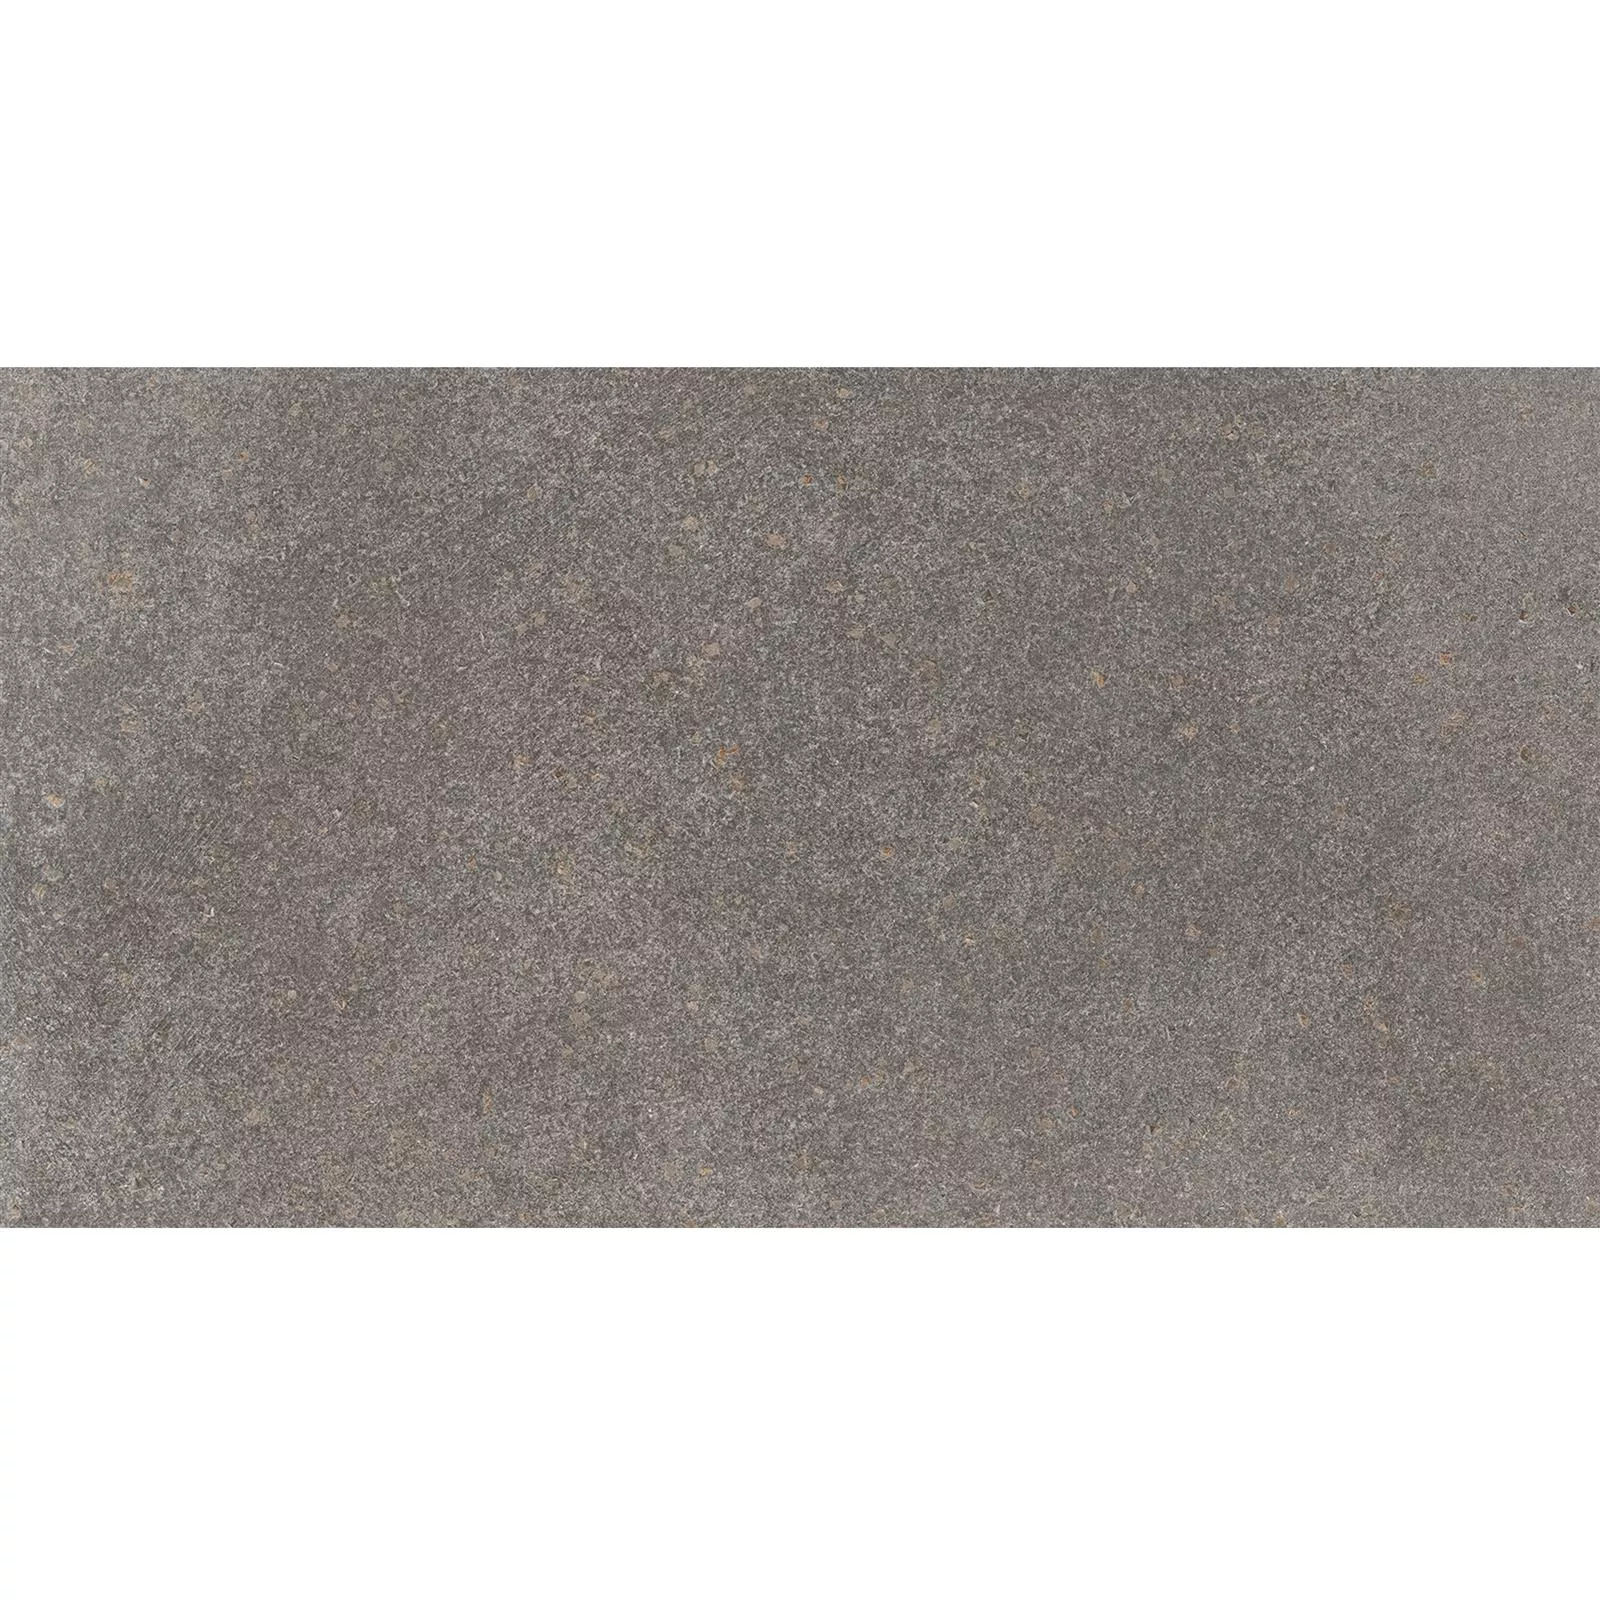 Ladrilhos Olhar de Pedra Horizon Marrom 30x60cm